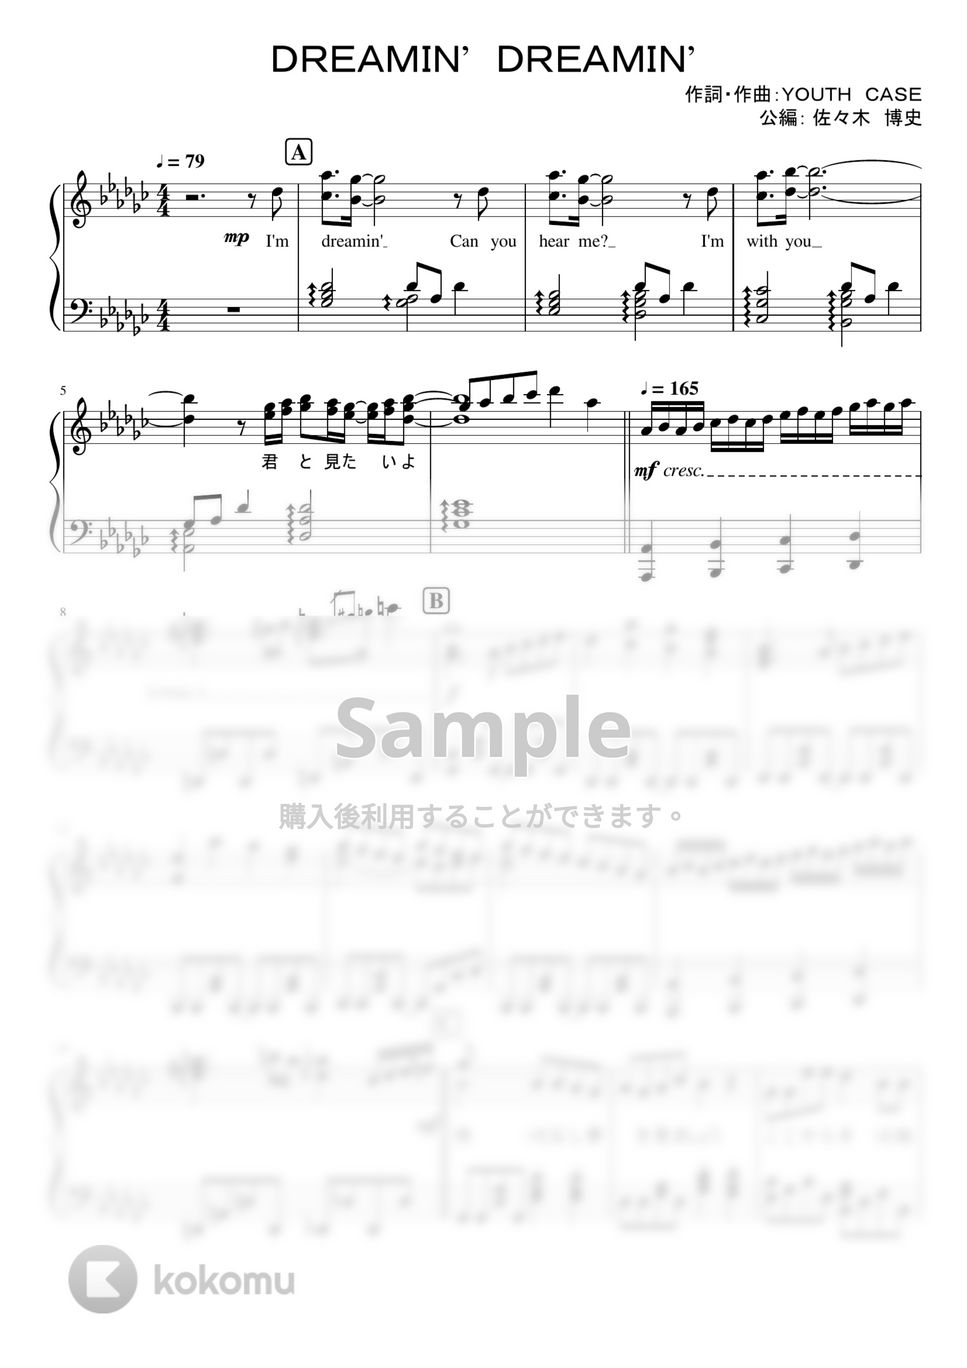 なにわ男子 - Dreamin' Dreamin' (1stアルバム「1st Love」収録曲。) by ピアノぷりん